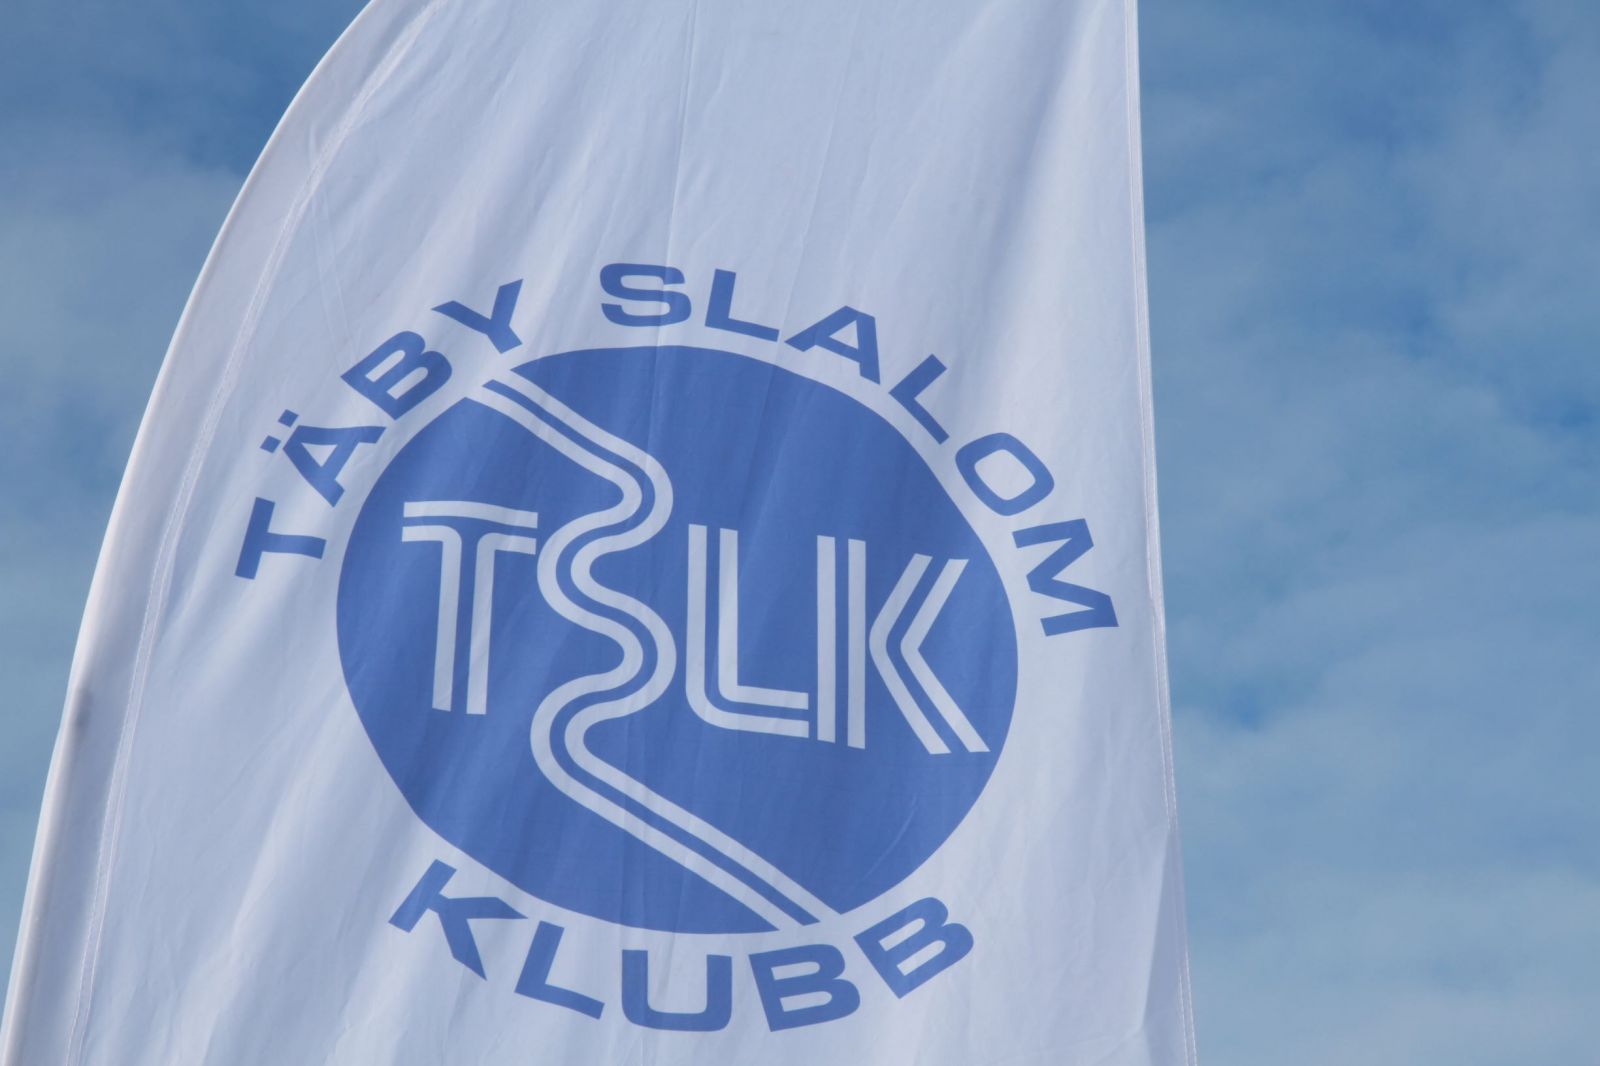 image: Rekordmånga TSLK:are till skidgymnasier